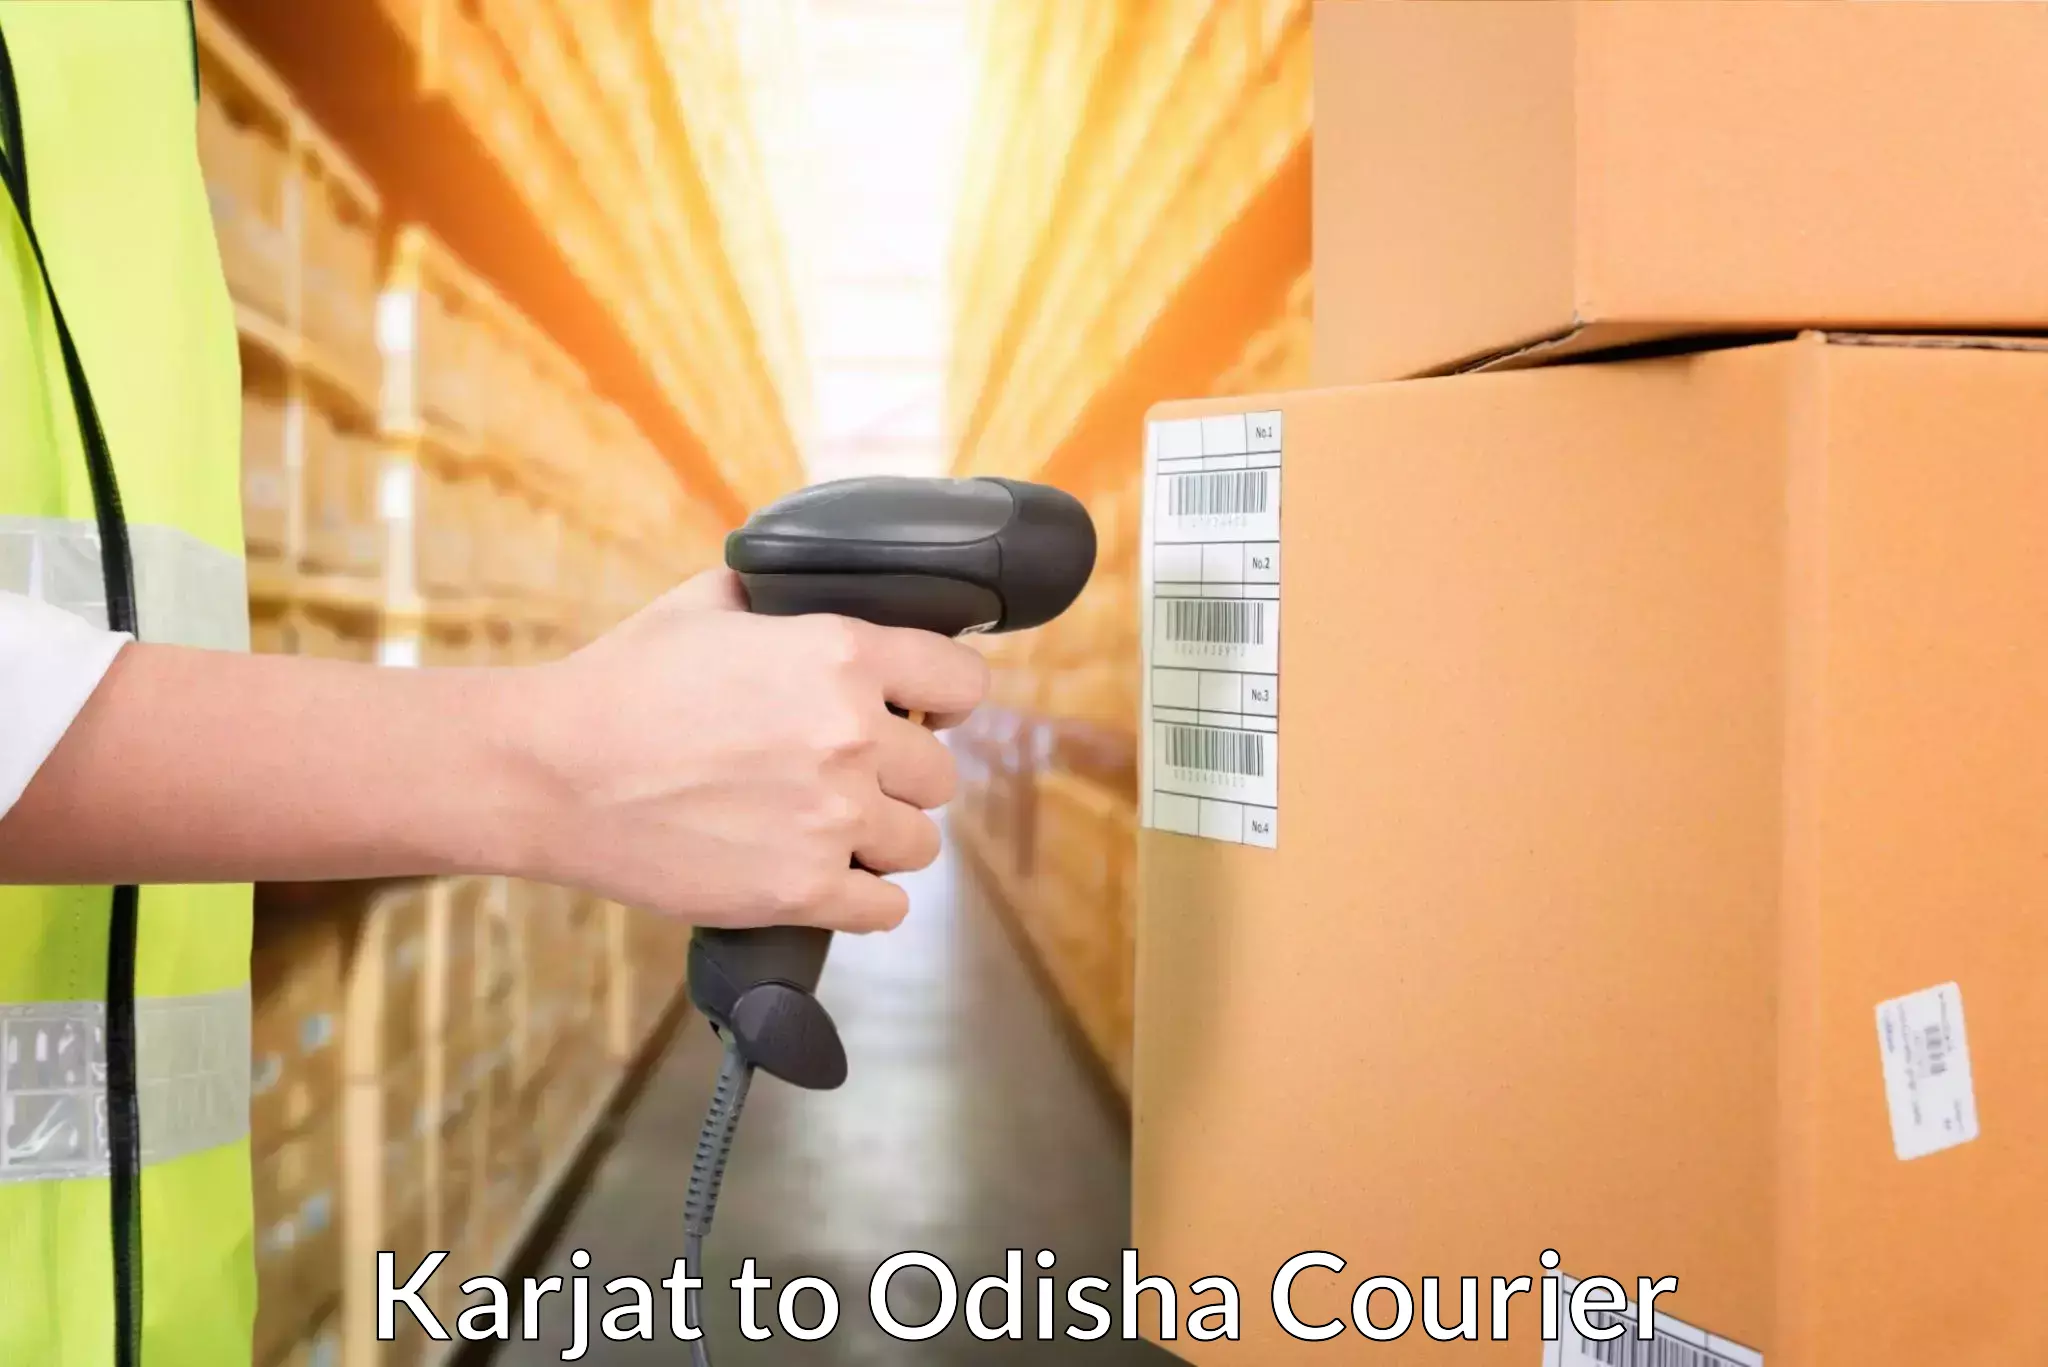 Door-to-door freight service Karjat to Balinga